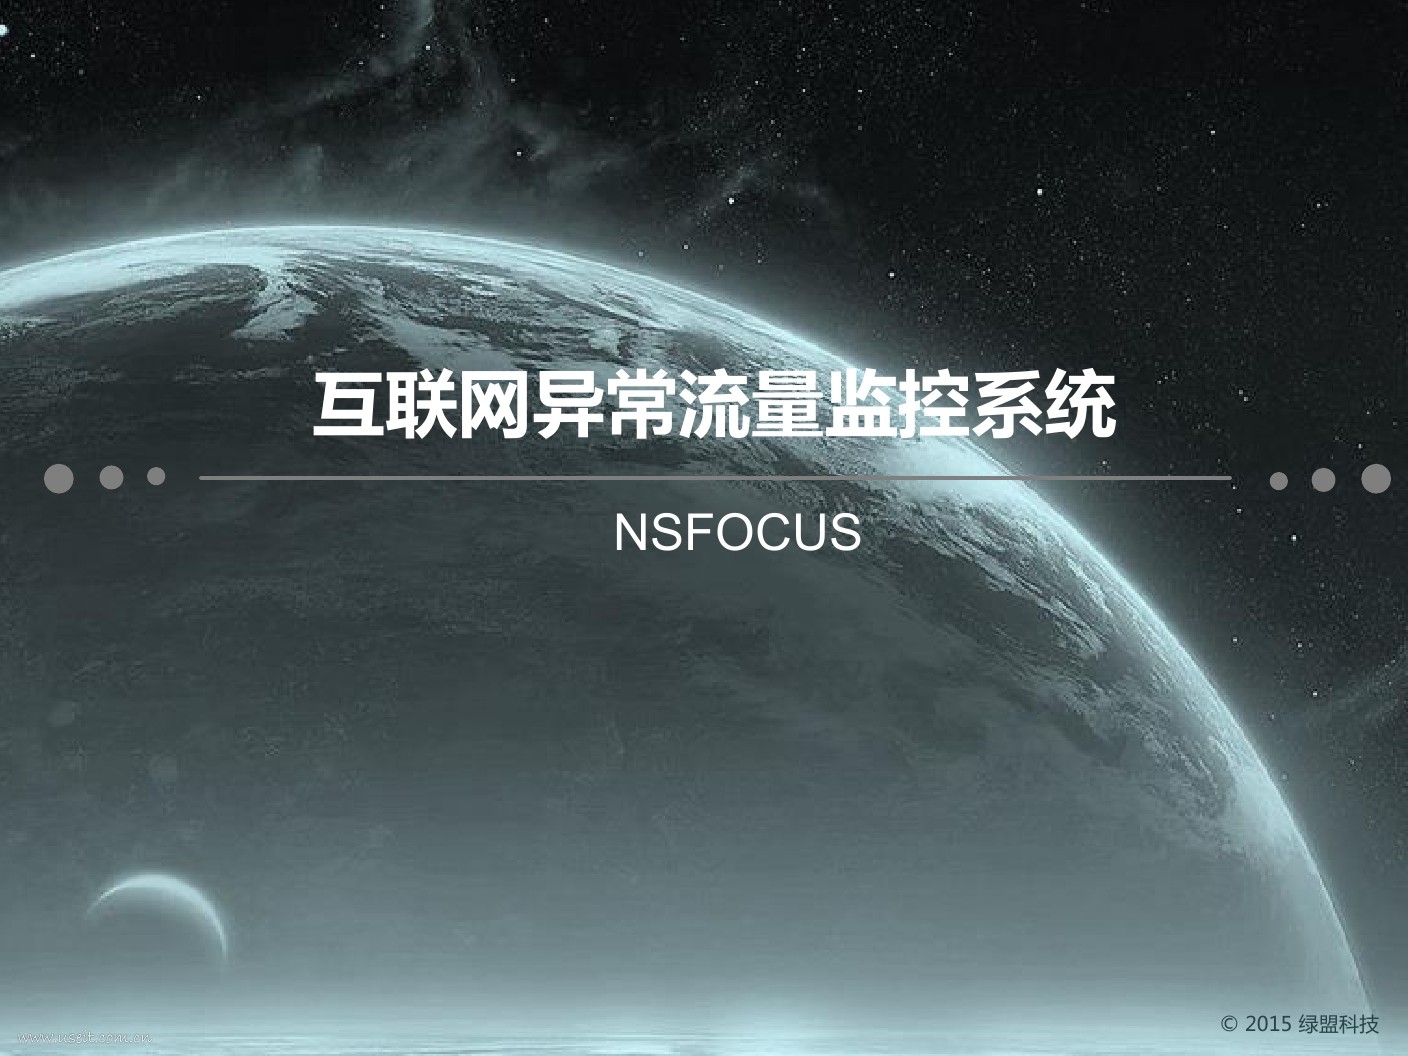 nsfocus:互联网异常流量监控系统